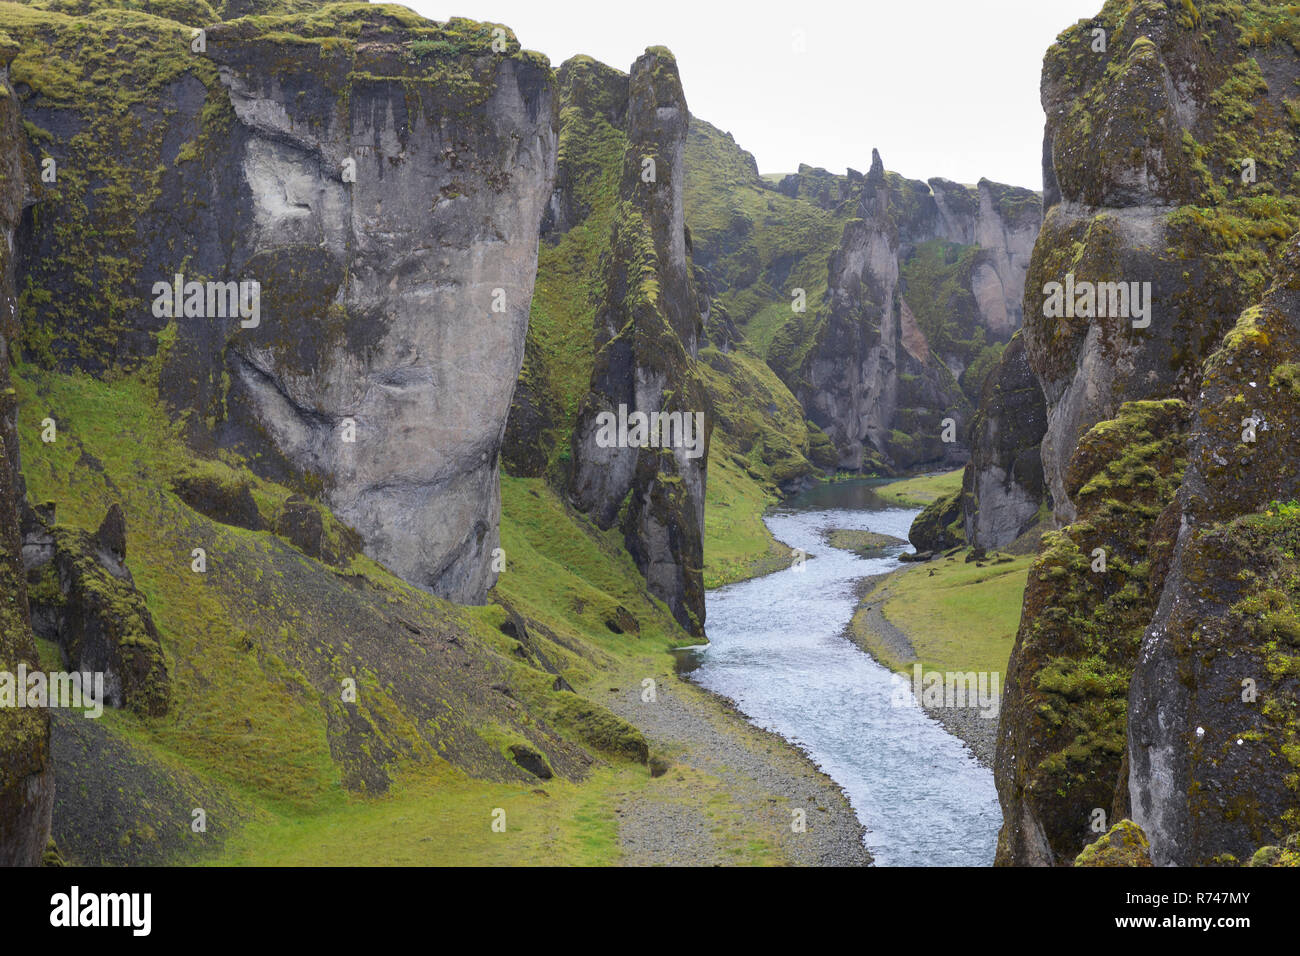 Fjaðrárgljúfur-Schlucht, Fjathrargljufur-Schlucht, Schlucht, Canyon im Süden von Island, durch die Schlucht fließt der namensgebende Fluss Fjaðrá, can Stock Photo